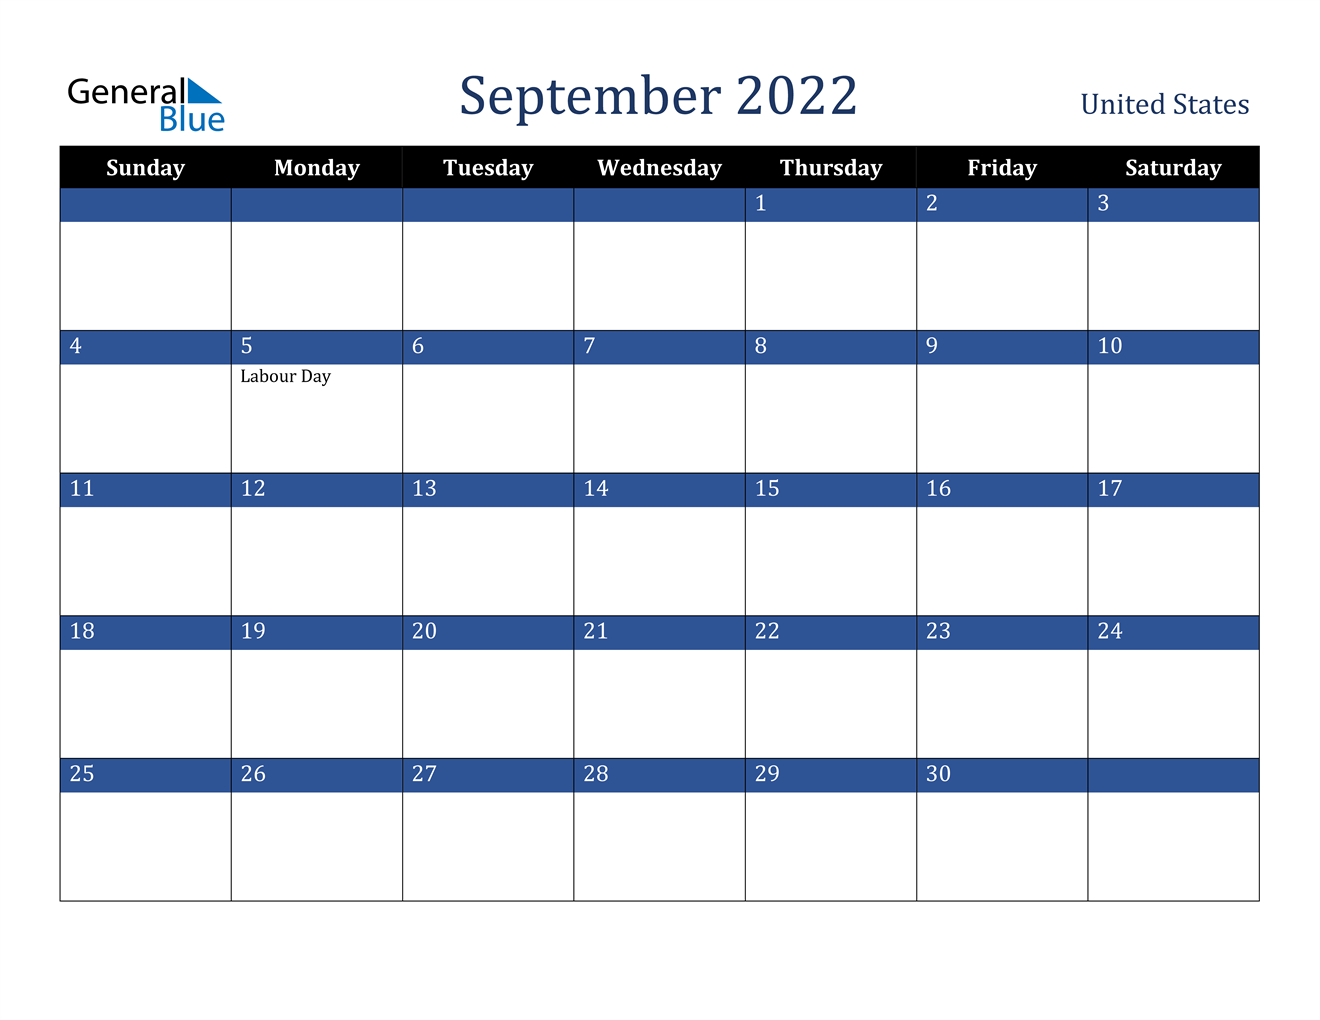 September 2022 Calendar - United States